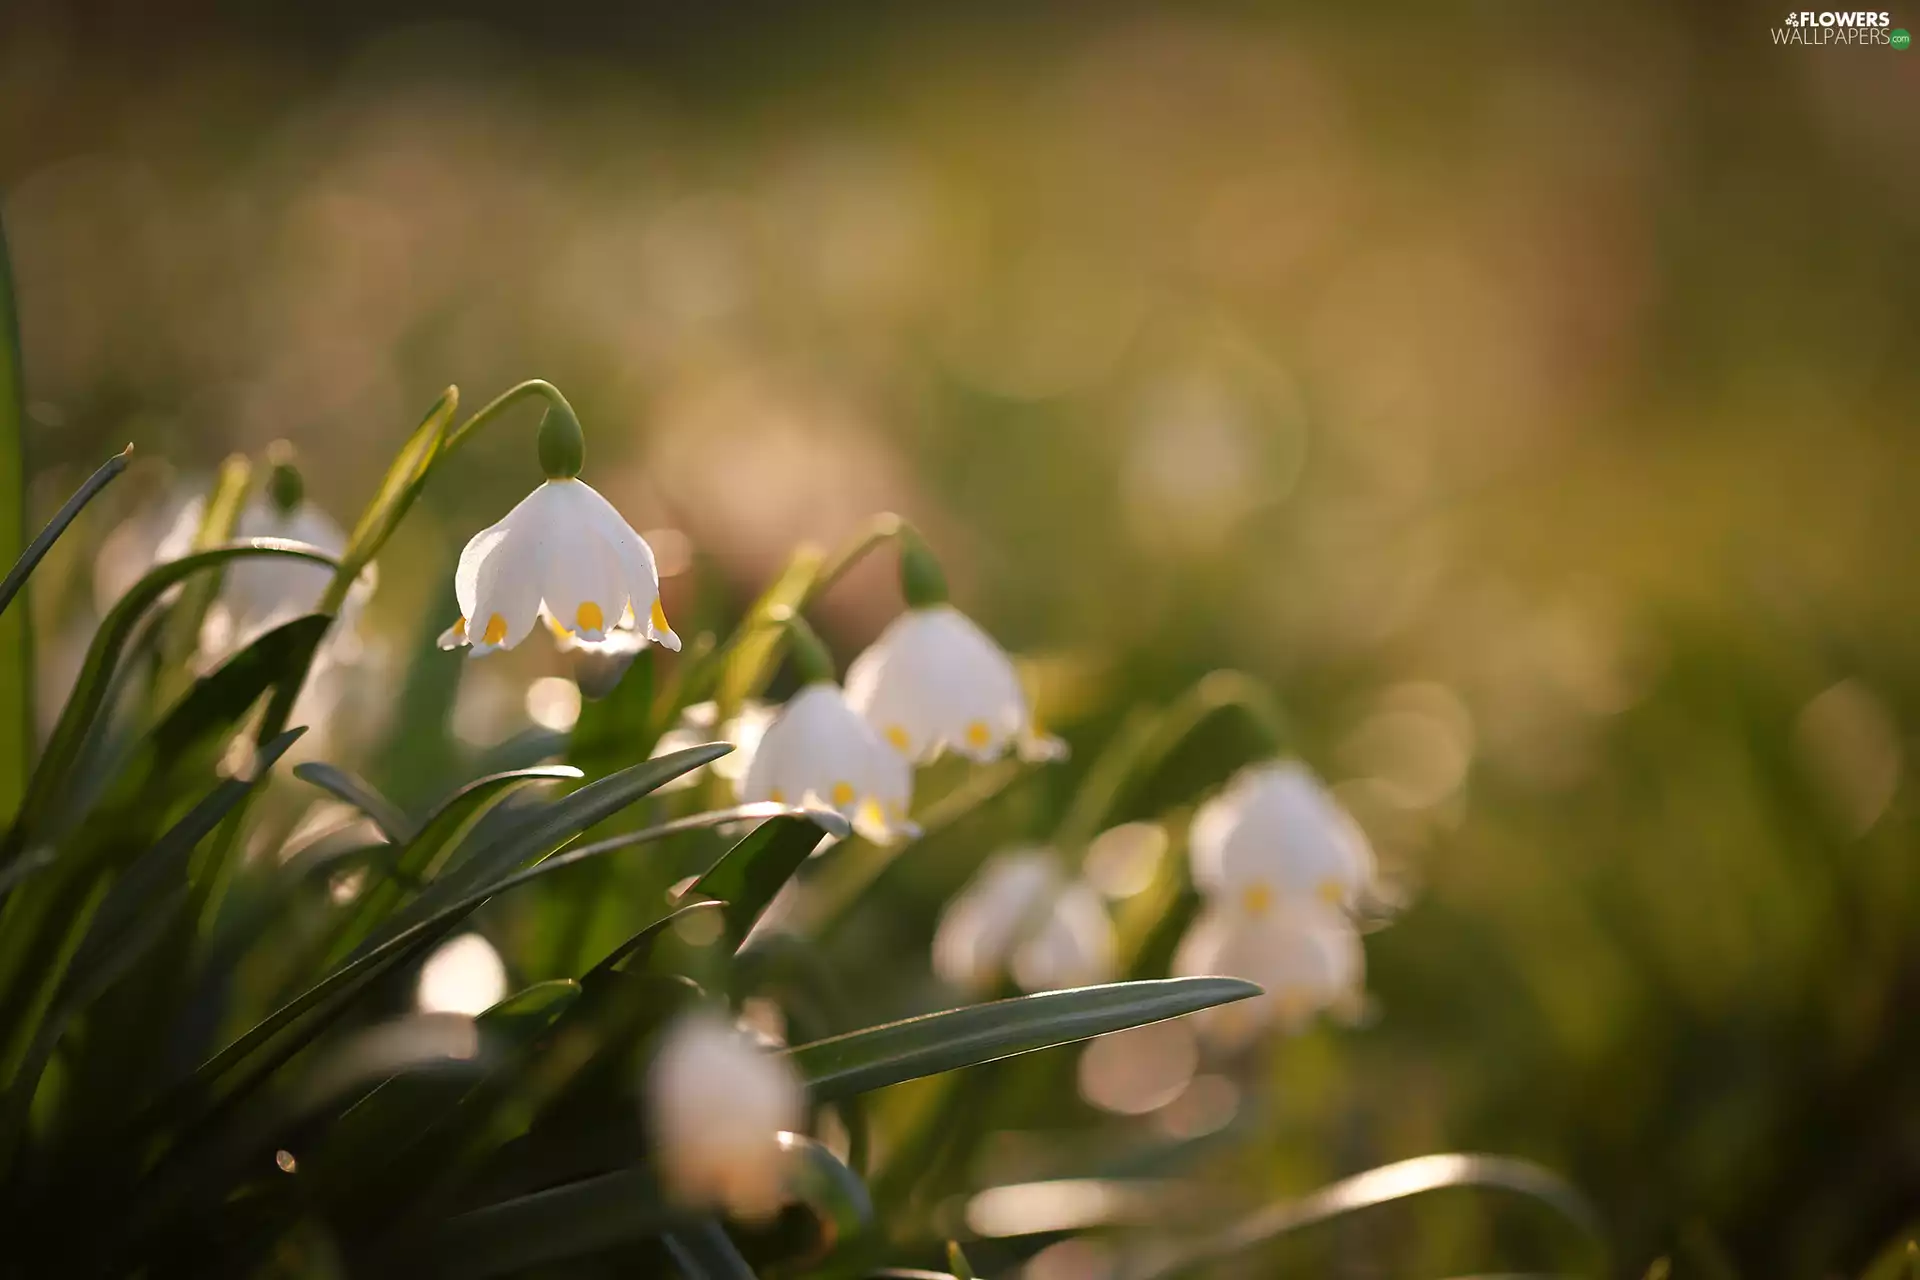 Leucojum, Flowers, blurry background, White